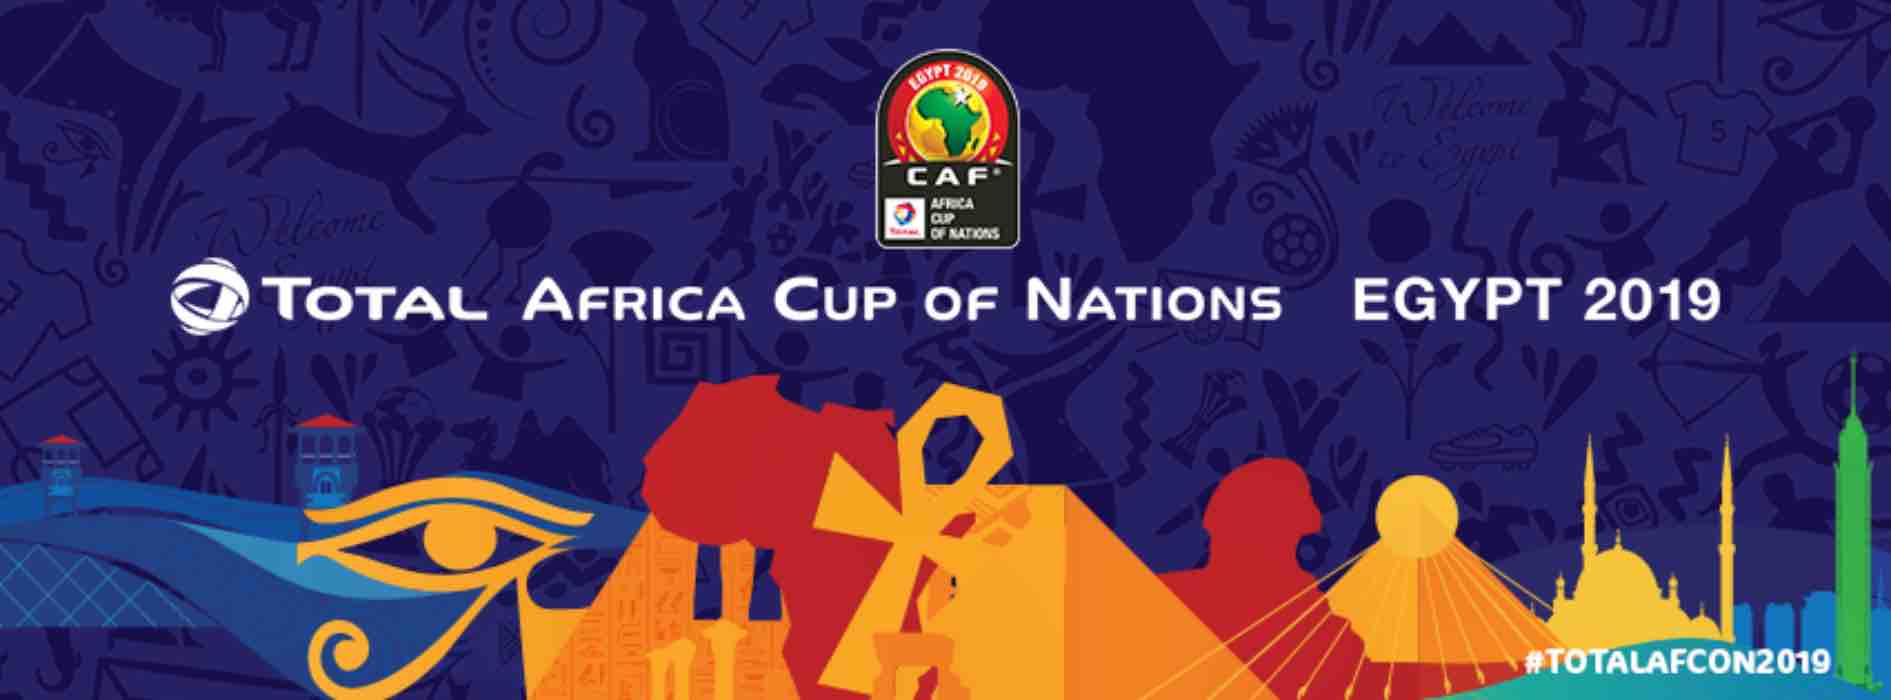 Coppa d'Africa | Semifinali | Algeria - Nigeria | Info, data e dove vederla